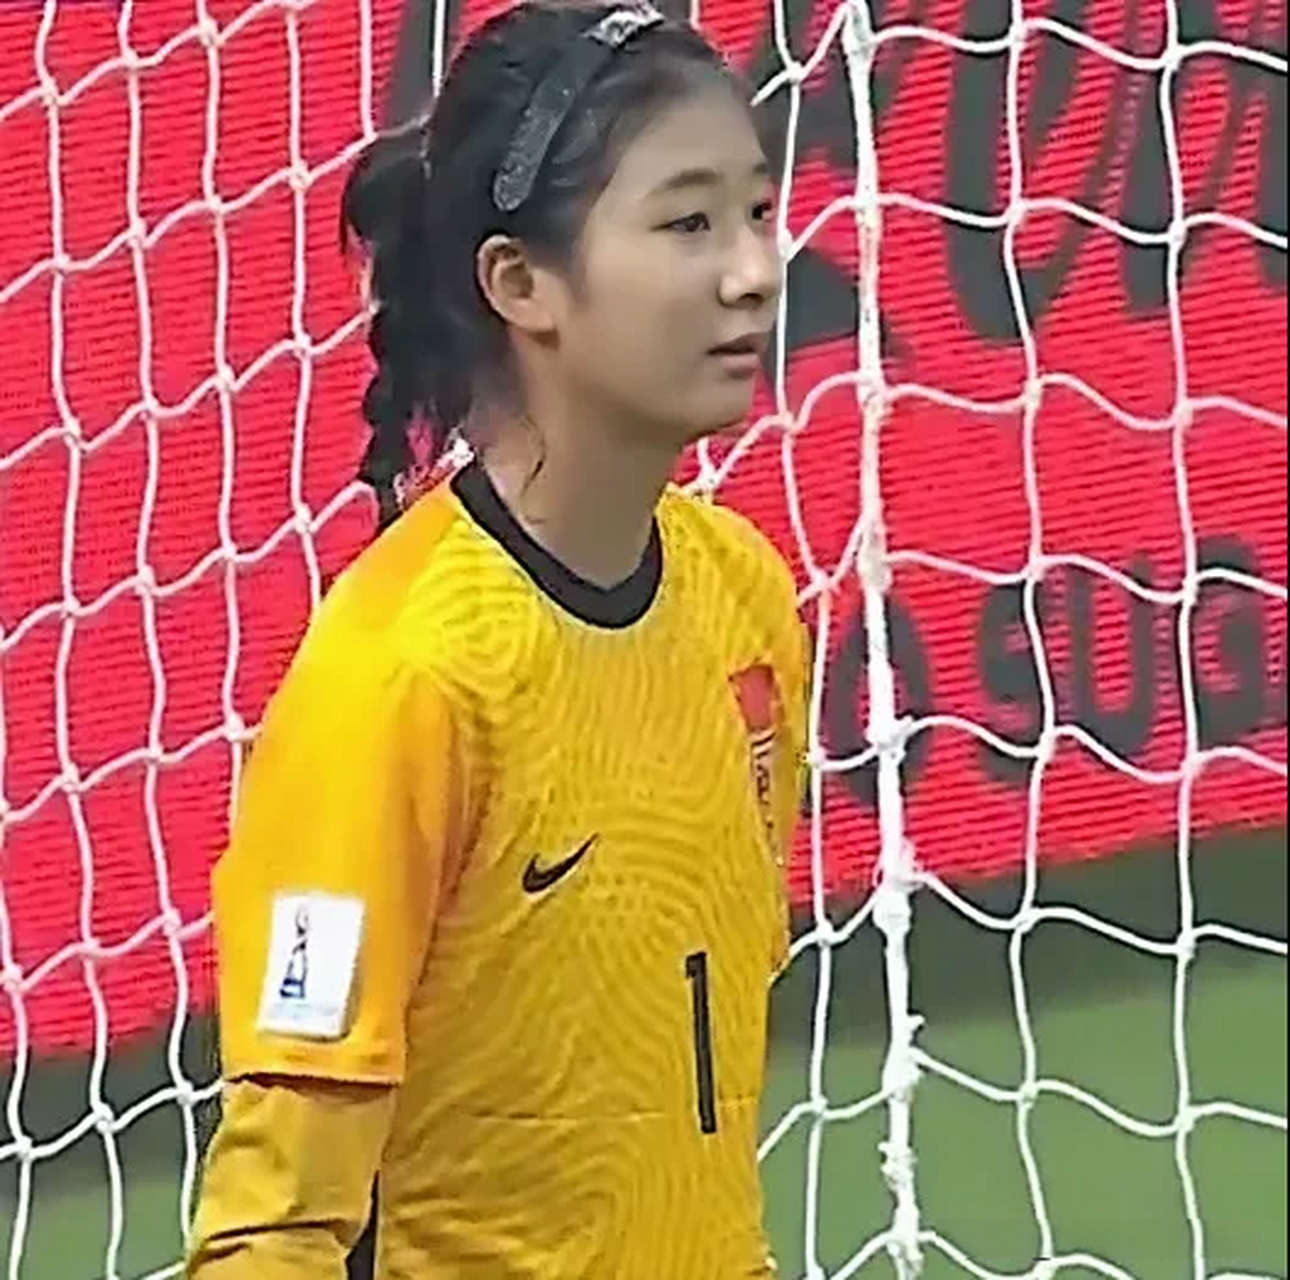 刘晨,中国u17女足国家队守门员,2006年6月30日出生于山东日照,身高一